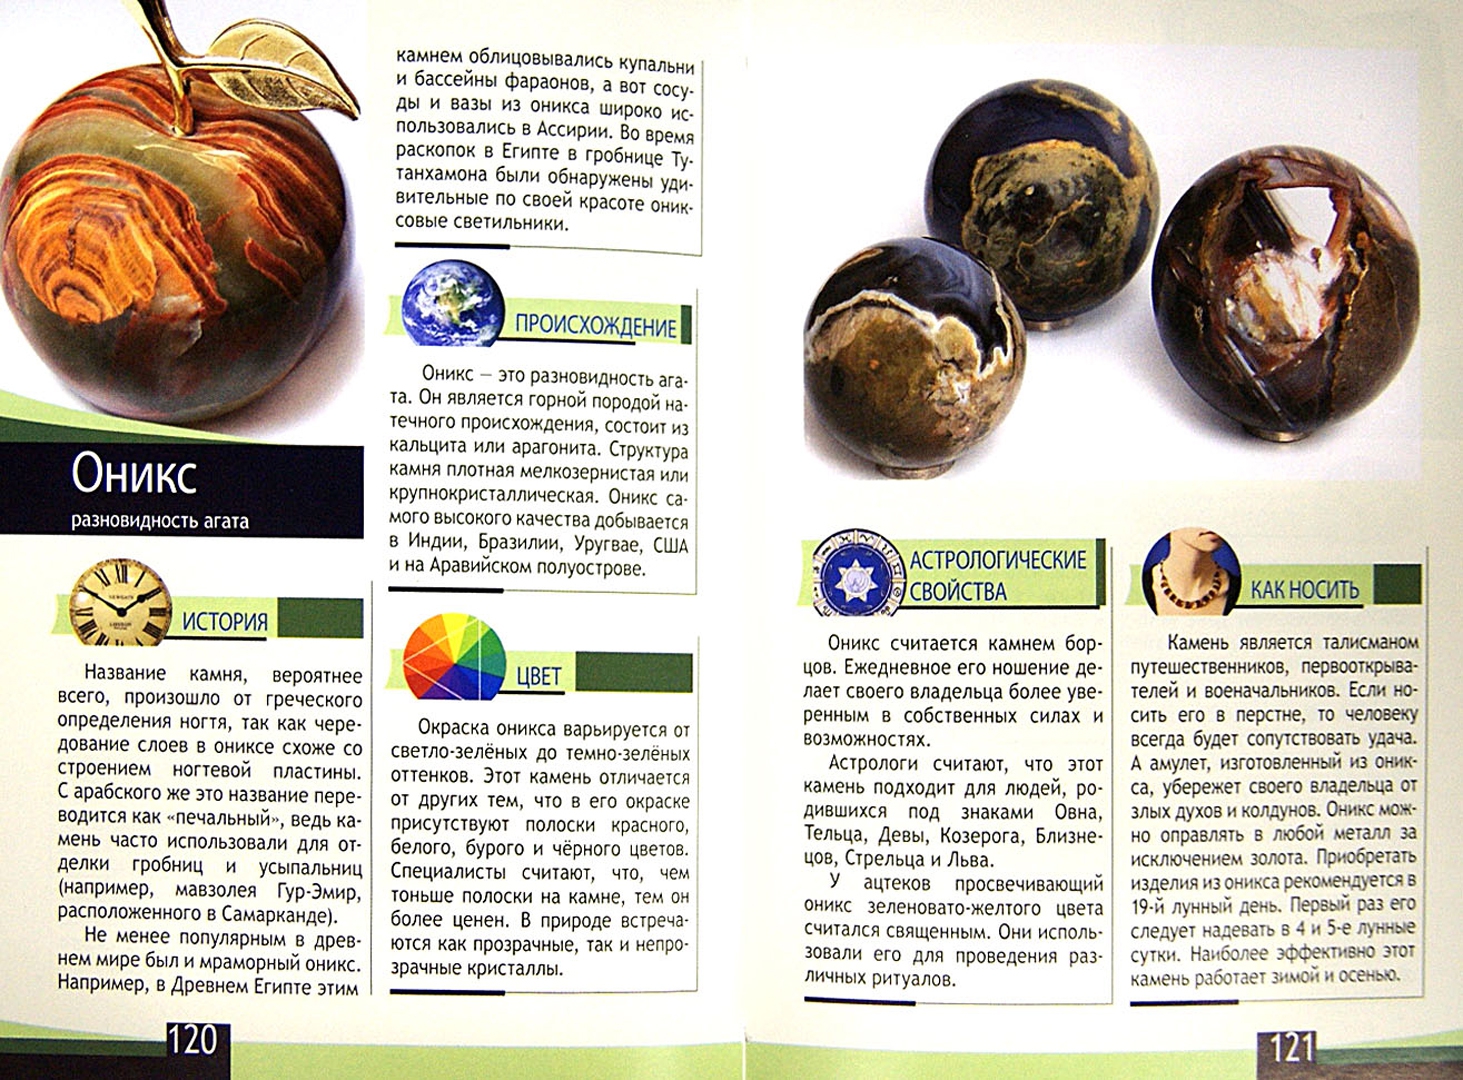 Иллюстрация 1 из 8 для Самые популярные драгоценные камни и минералы - Гаврилова, Шанина, Елисеева | Лабиринт - книги. Источник: Лабиринт